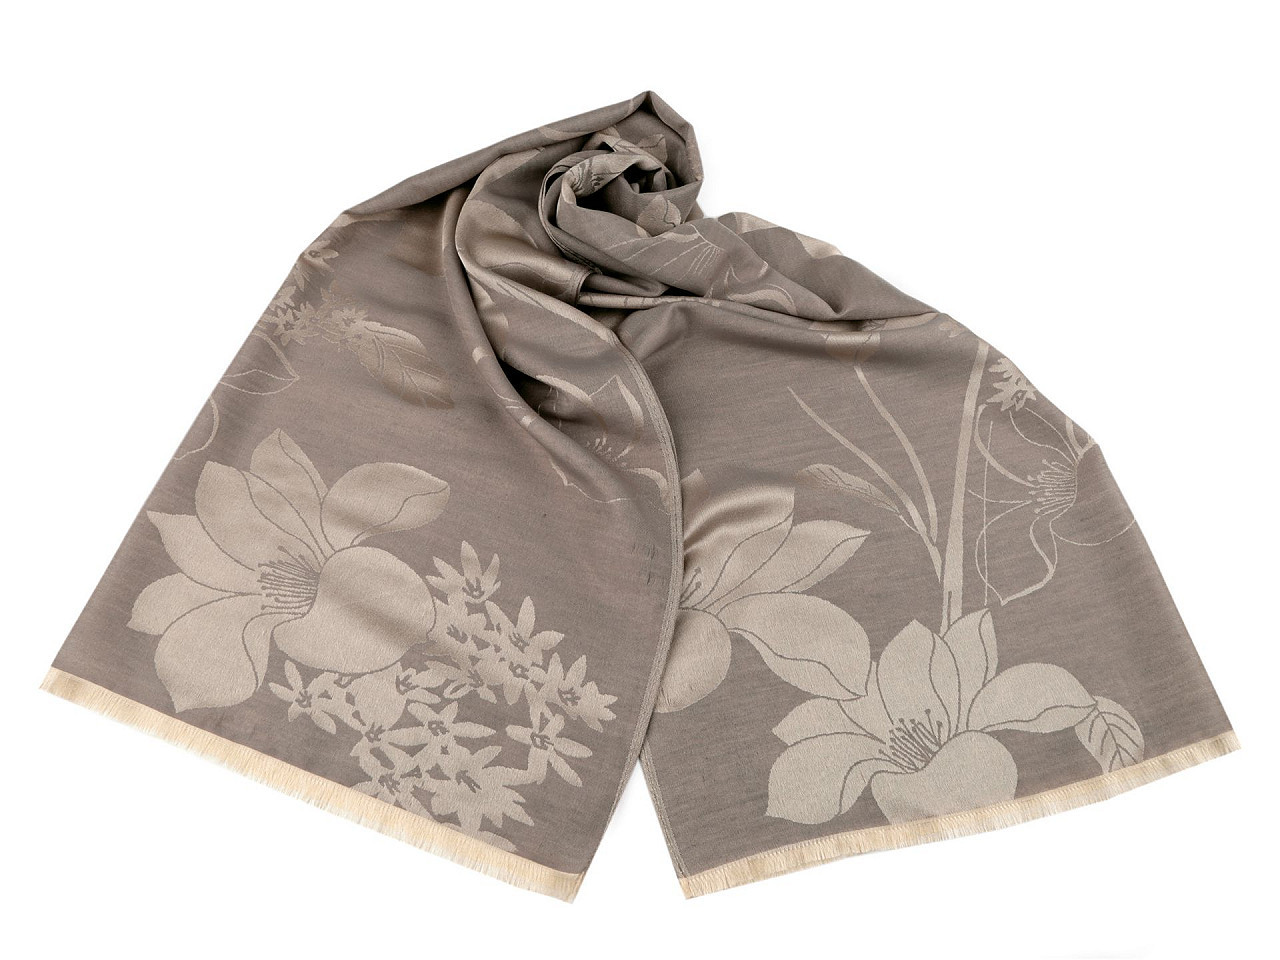 Šátek / šála s květy typu pashmina 74x185 cm, barva 2 béžová